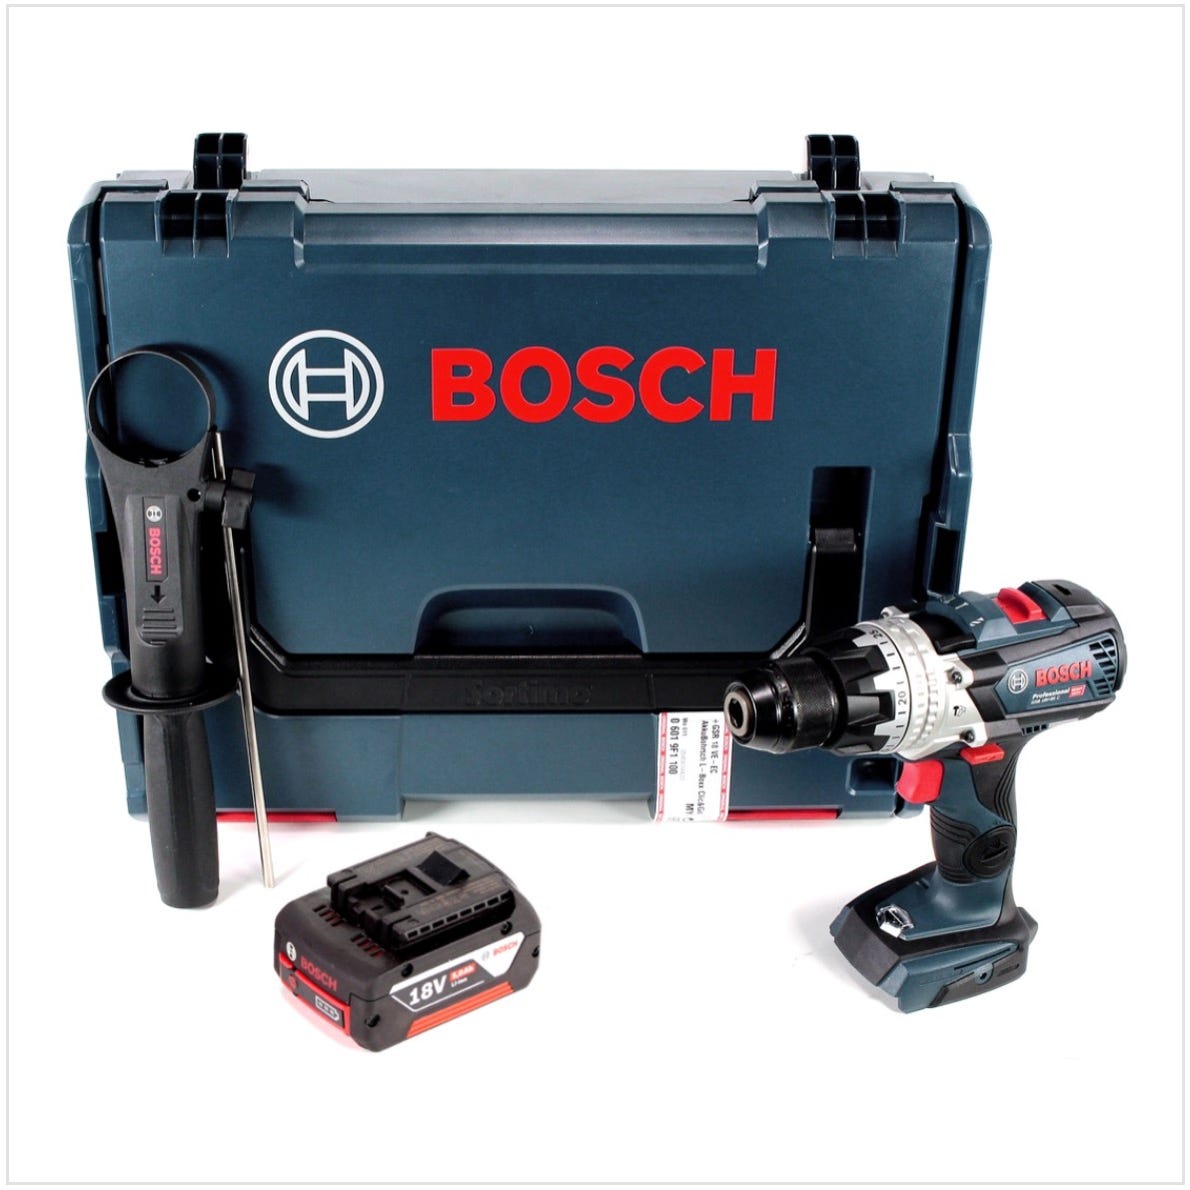 Bosch Perceuse-visseuse à percussion 18 V EC sans balais de 1/2 po (outil)